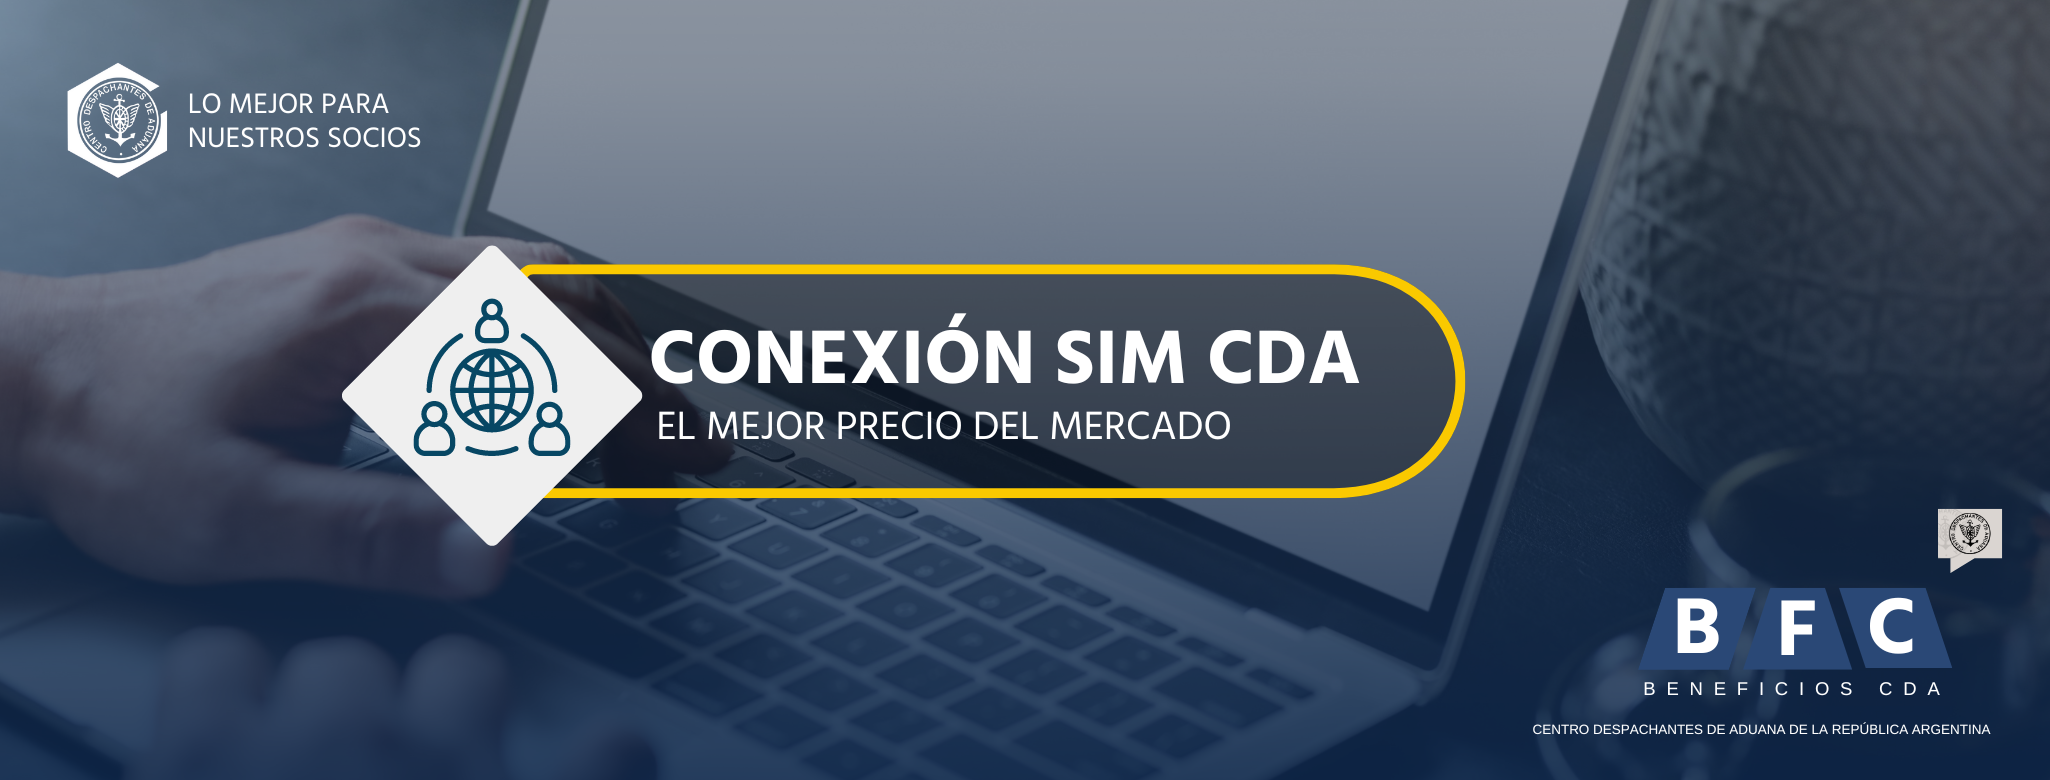 Servicio Exclusivo de Conectividad SIM CDA - Costo preferencial para socios 